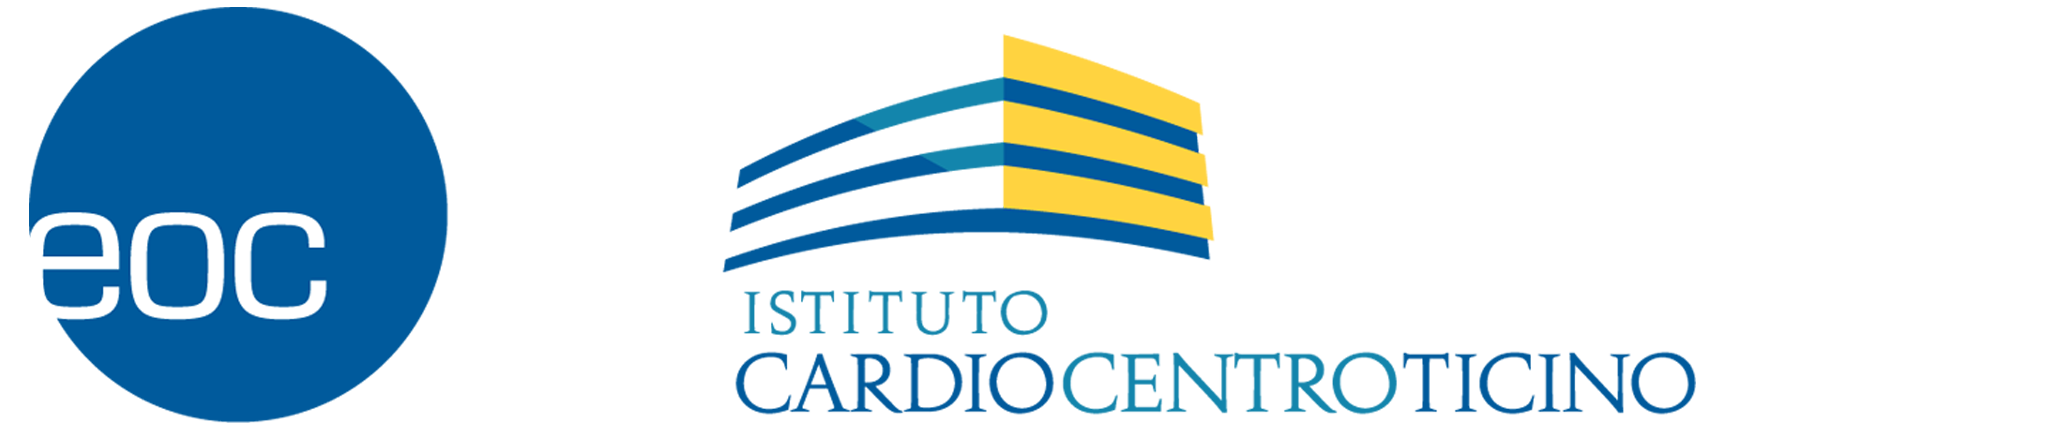 Cardiocentro Report